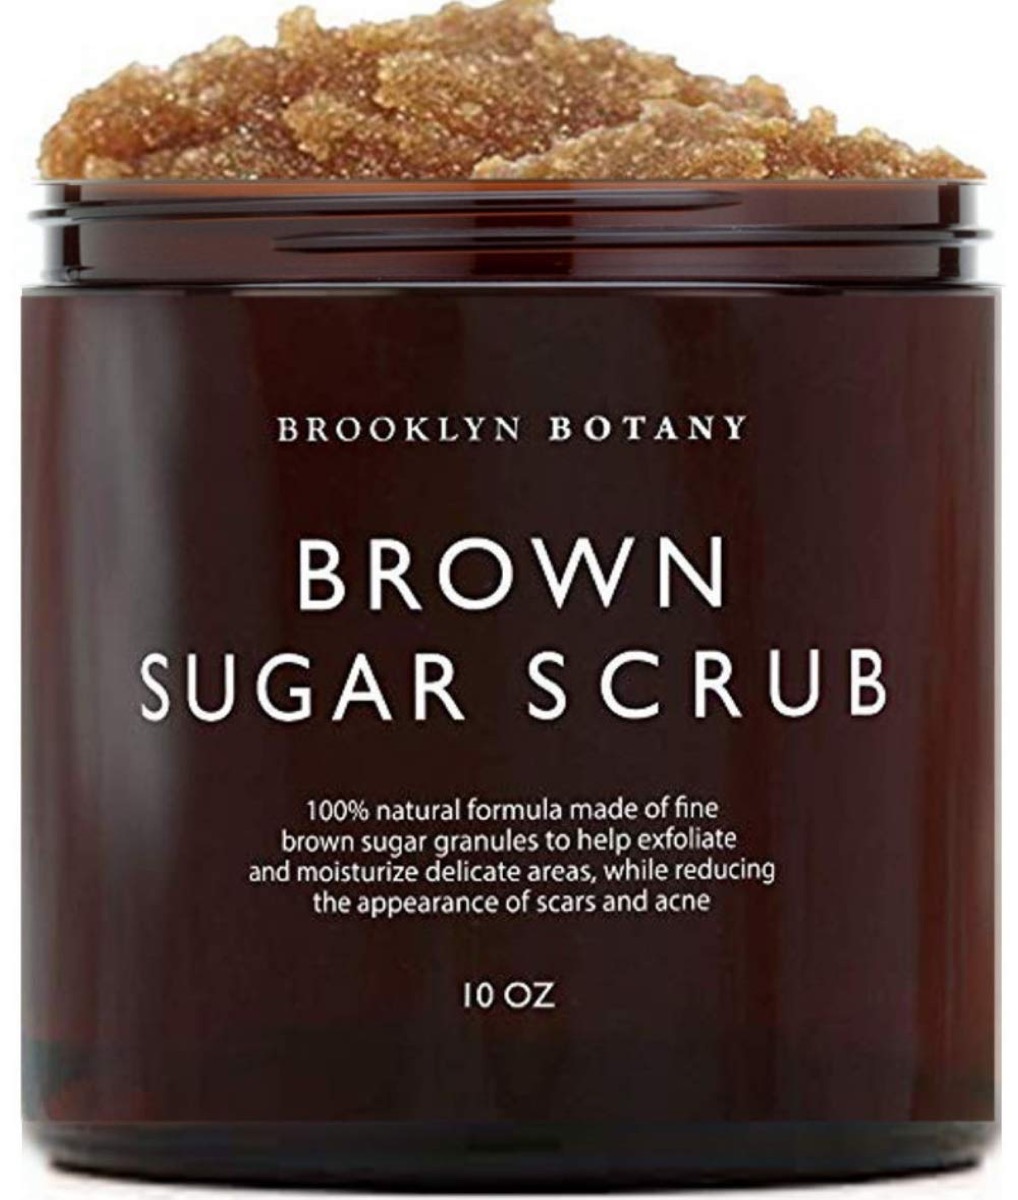 Brown sugar body scrub